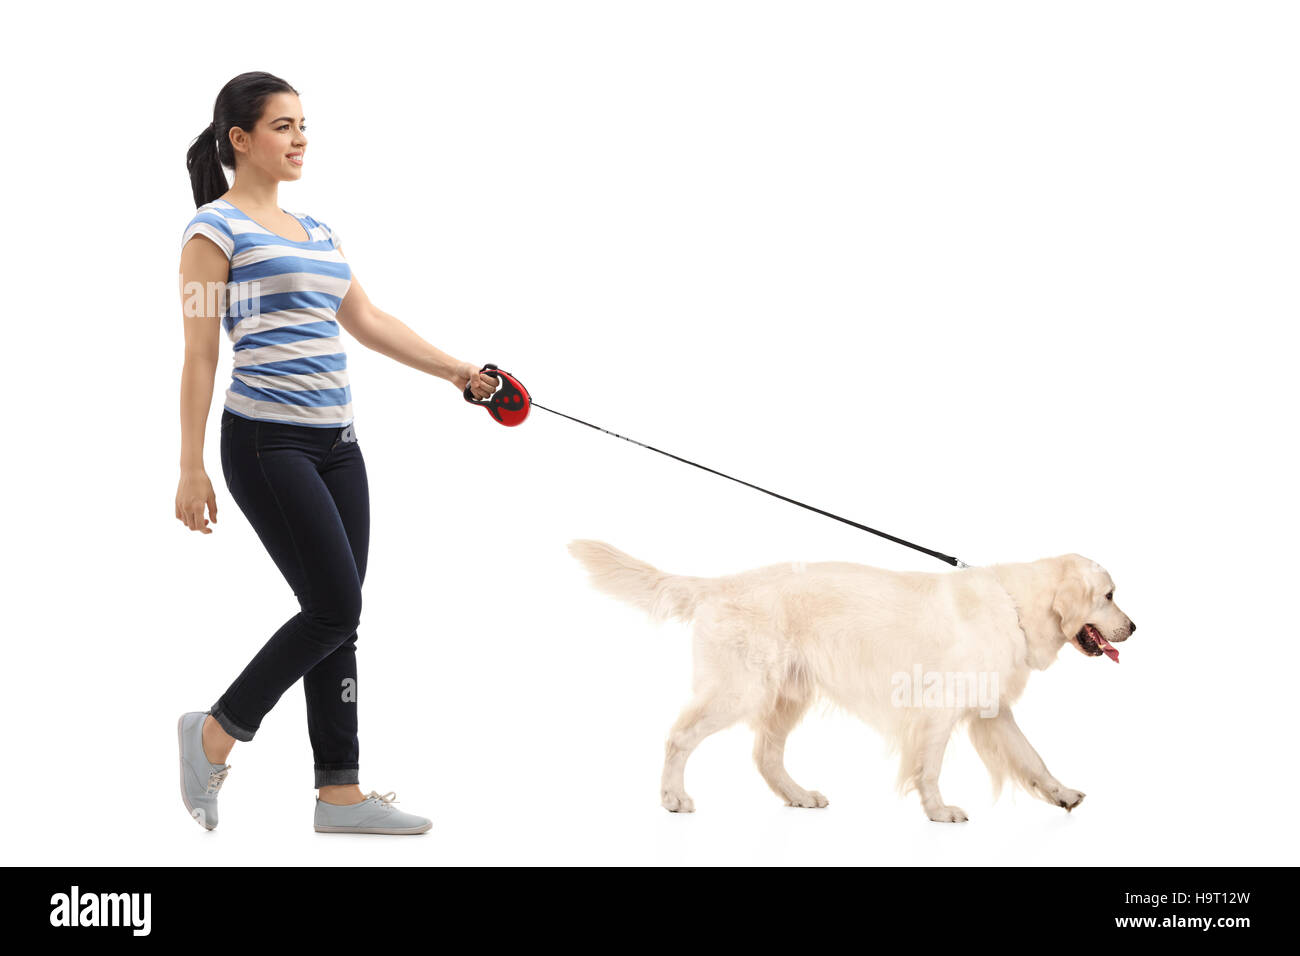 Profil de pleine longueur shot of woman promener son chien isolé sur fond blanc Banque D'Images